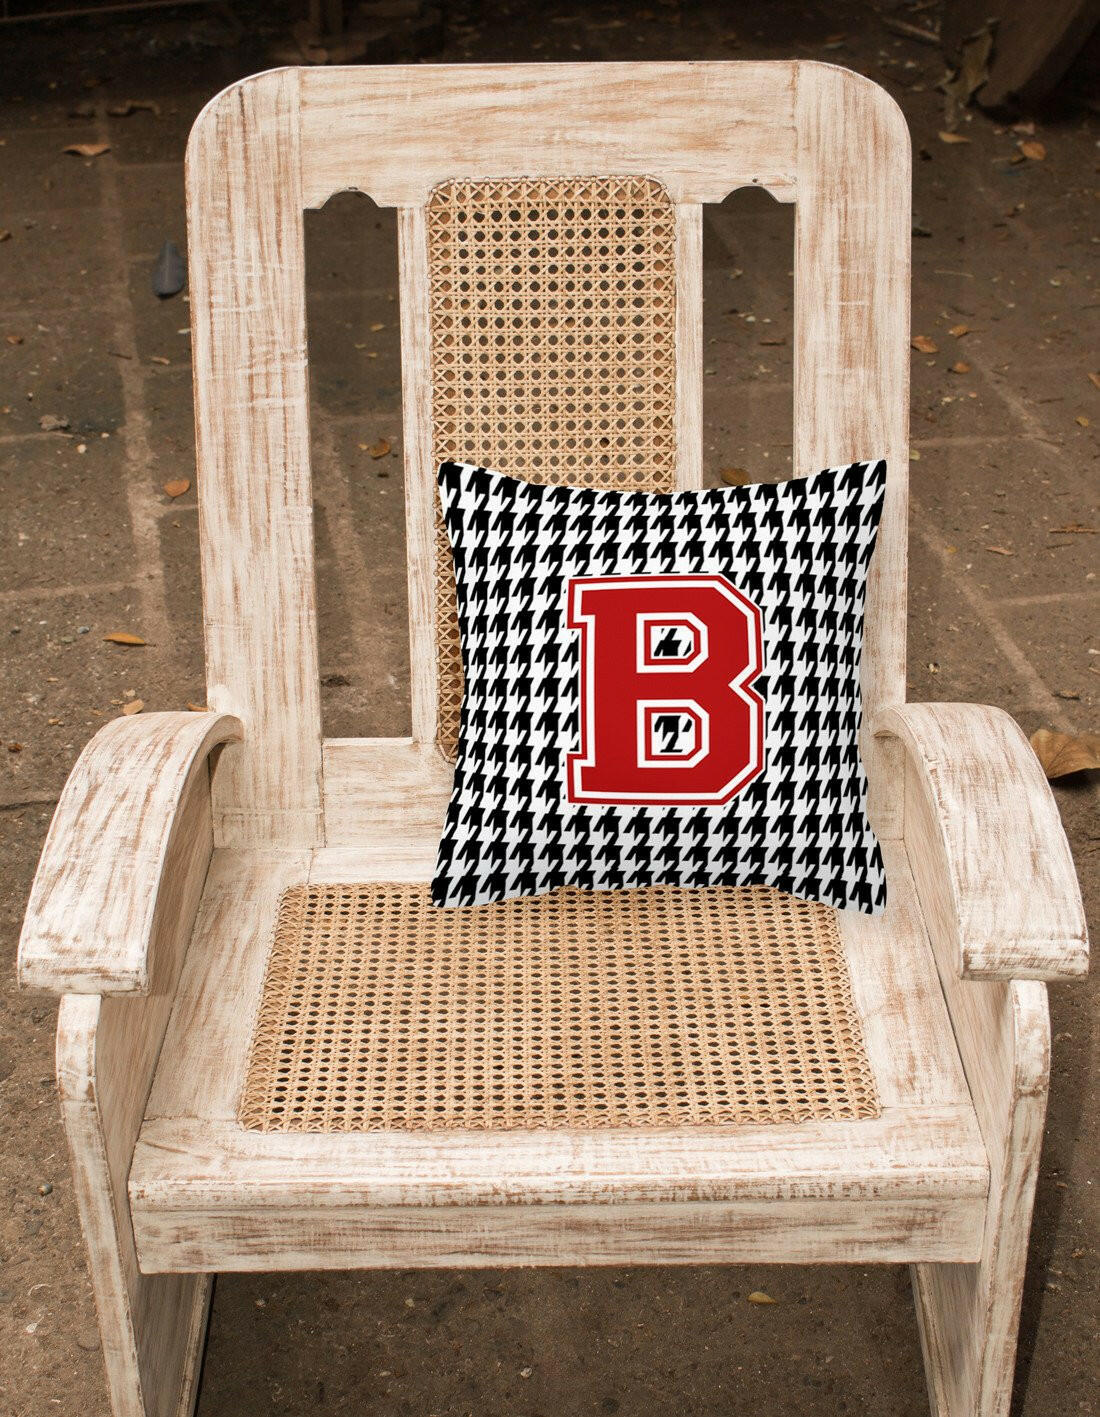 Monogram - Initial B Houndstooth Decorative   Canvas Fabric Pillow CJ1021 - the-store.com